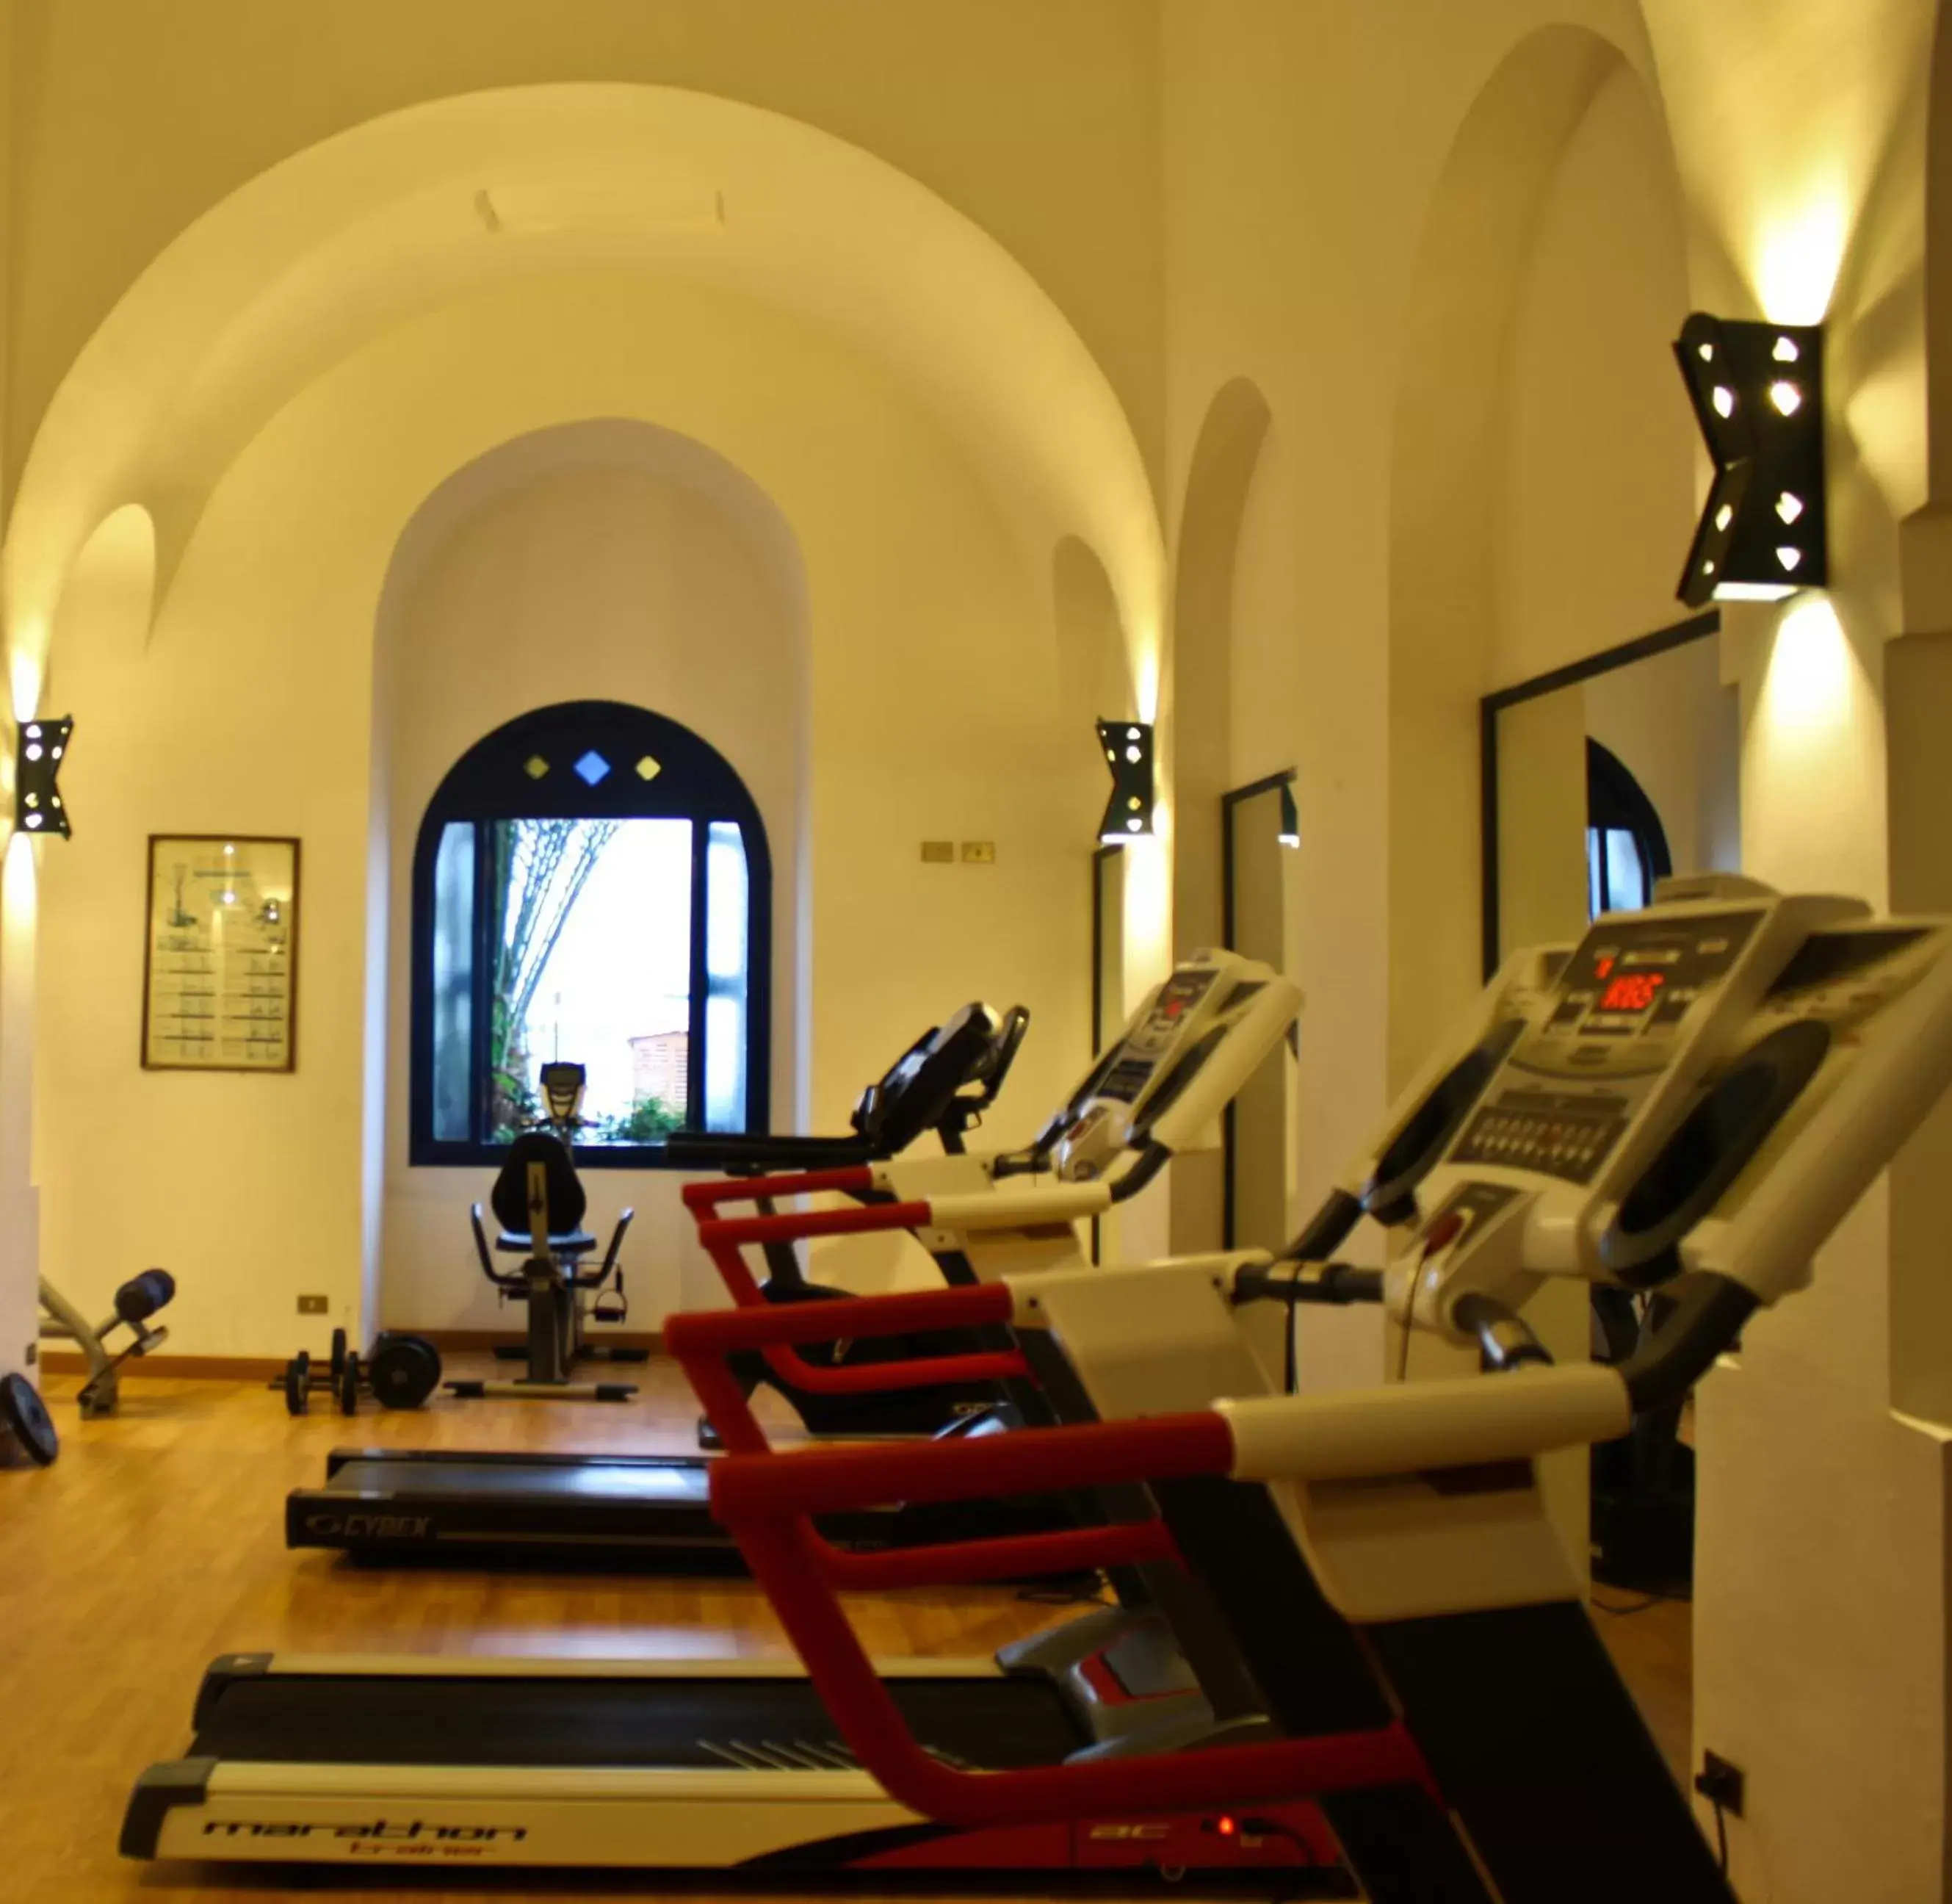 Fitness centre/facilities, Fitness Center/Facilities in Arabella Azur Resort